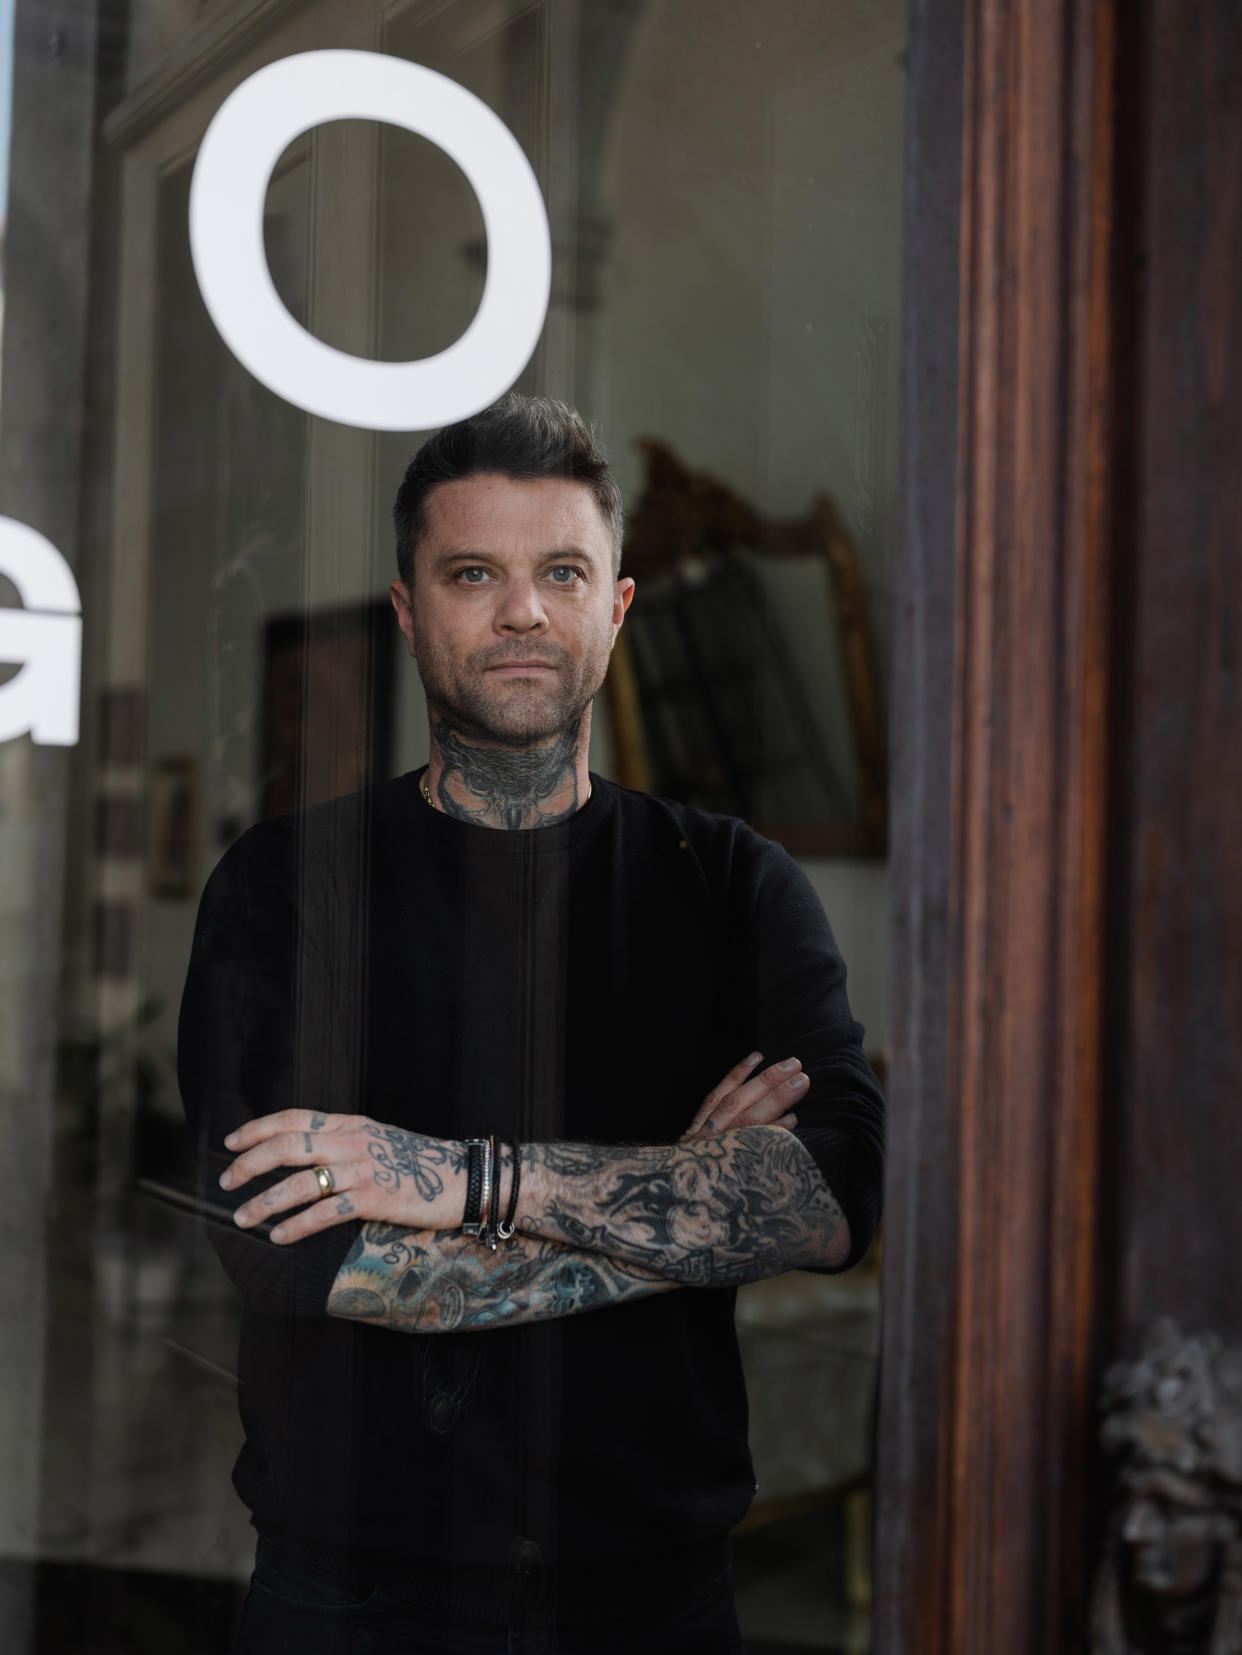 El tatuador Alex De Pase, propietario de nueve salones de tatuajes, en el estudio de su casa en el pueblo de Grado, Italia, el 7 de abril de 2022. (Ciril Jazbec/The New York Times)